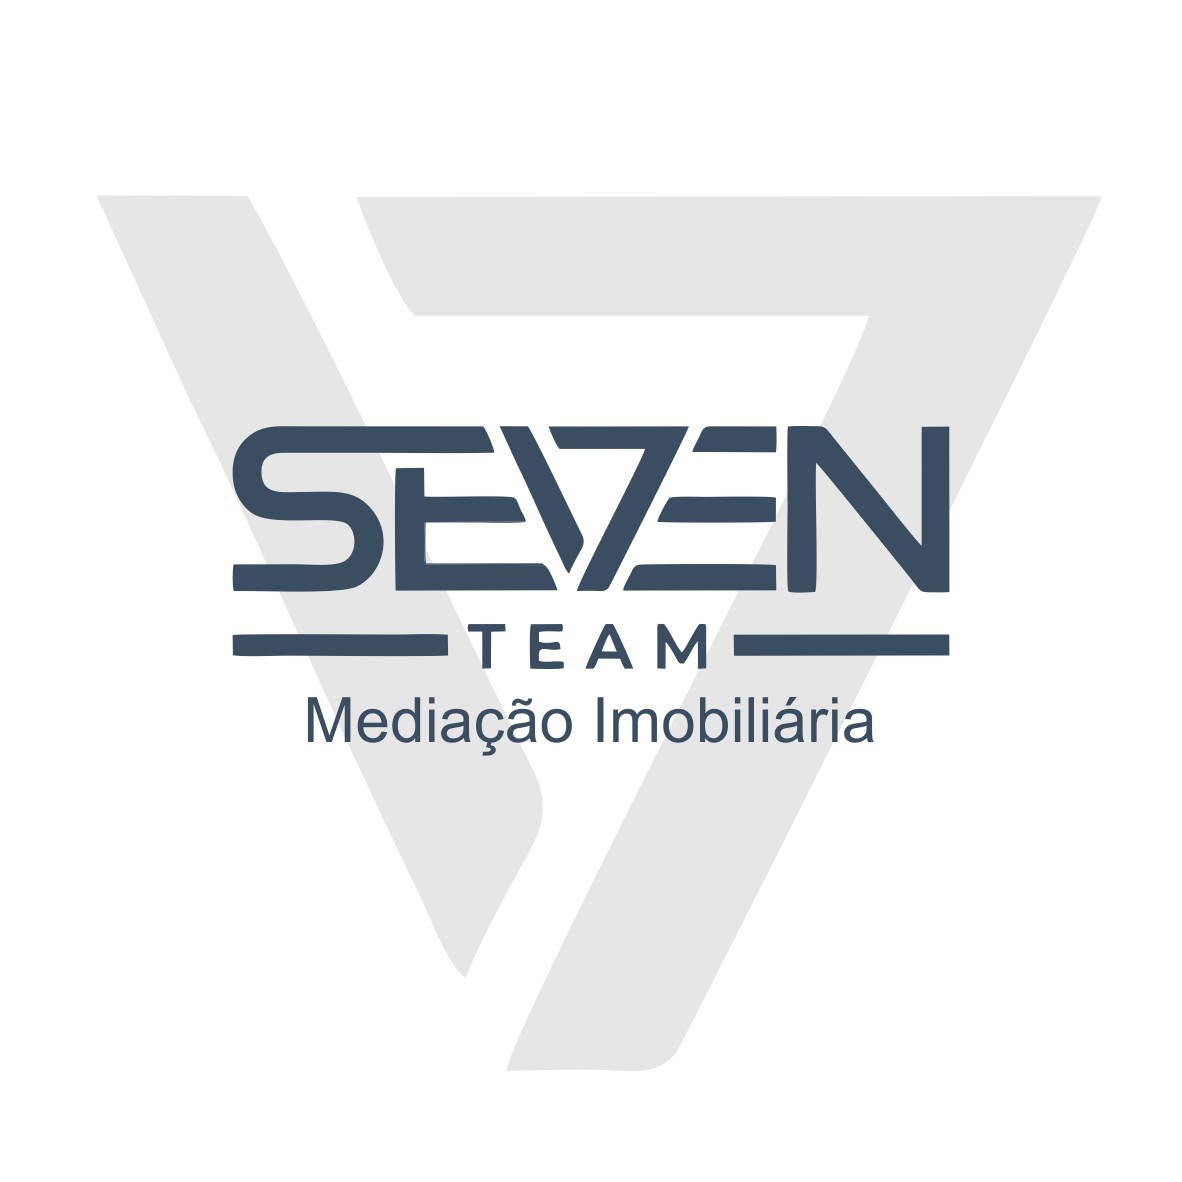 SEVEN TEAM MEDIAO IMOBILIRIA